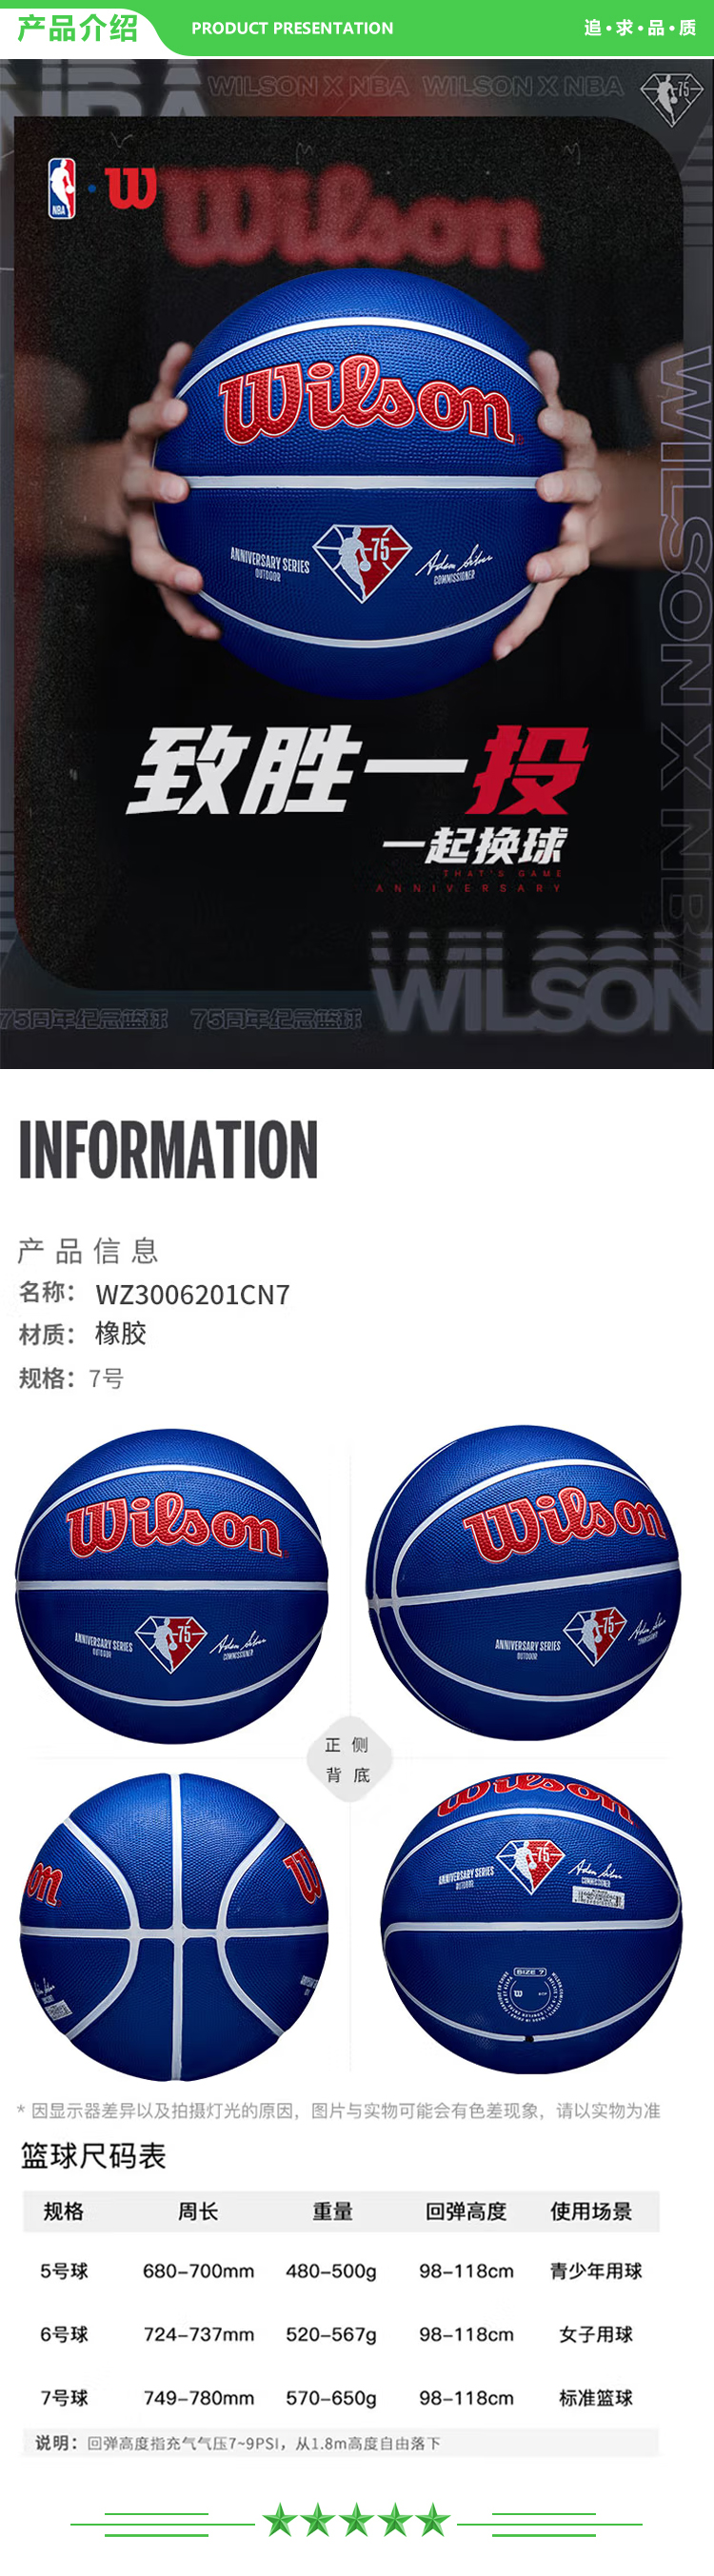 威尔胜 Wilson WZ3006201CN7 2021新款NBA75周年限量款篮球7号球 橡胶篮球  2.jpg